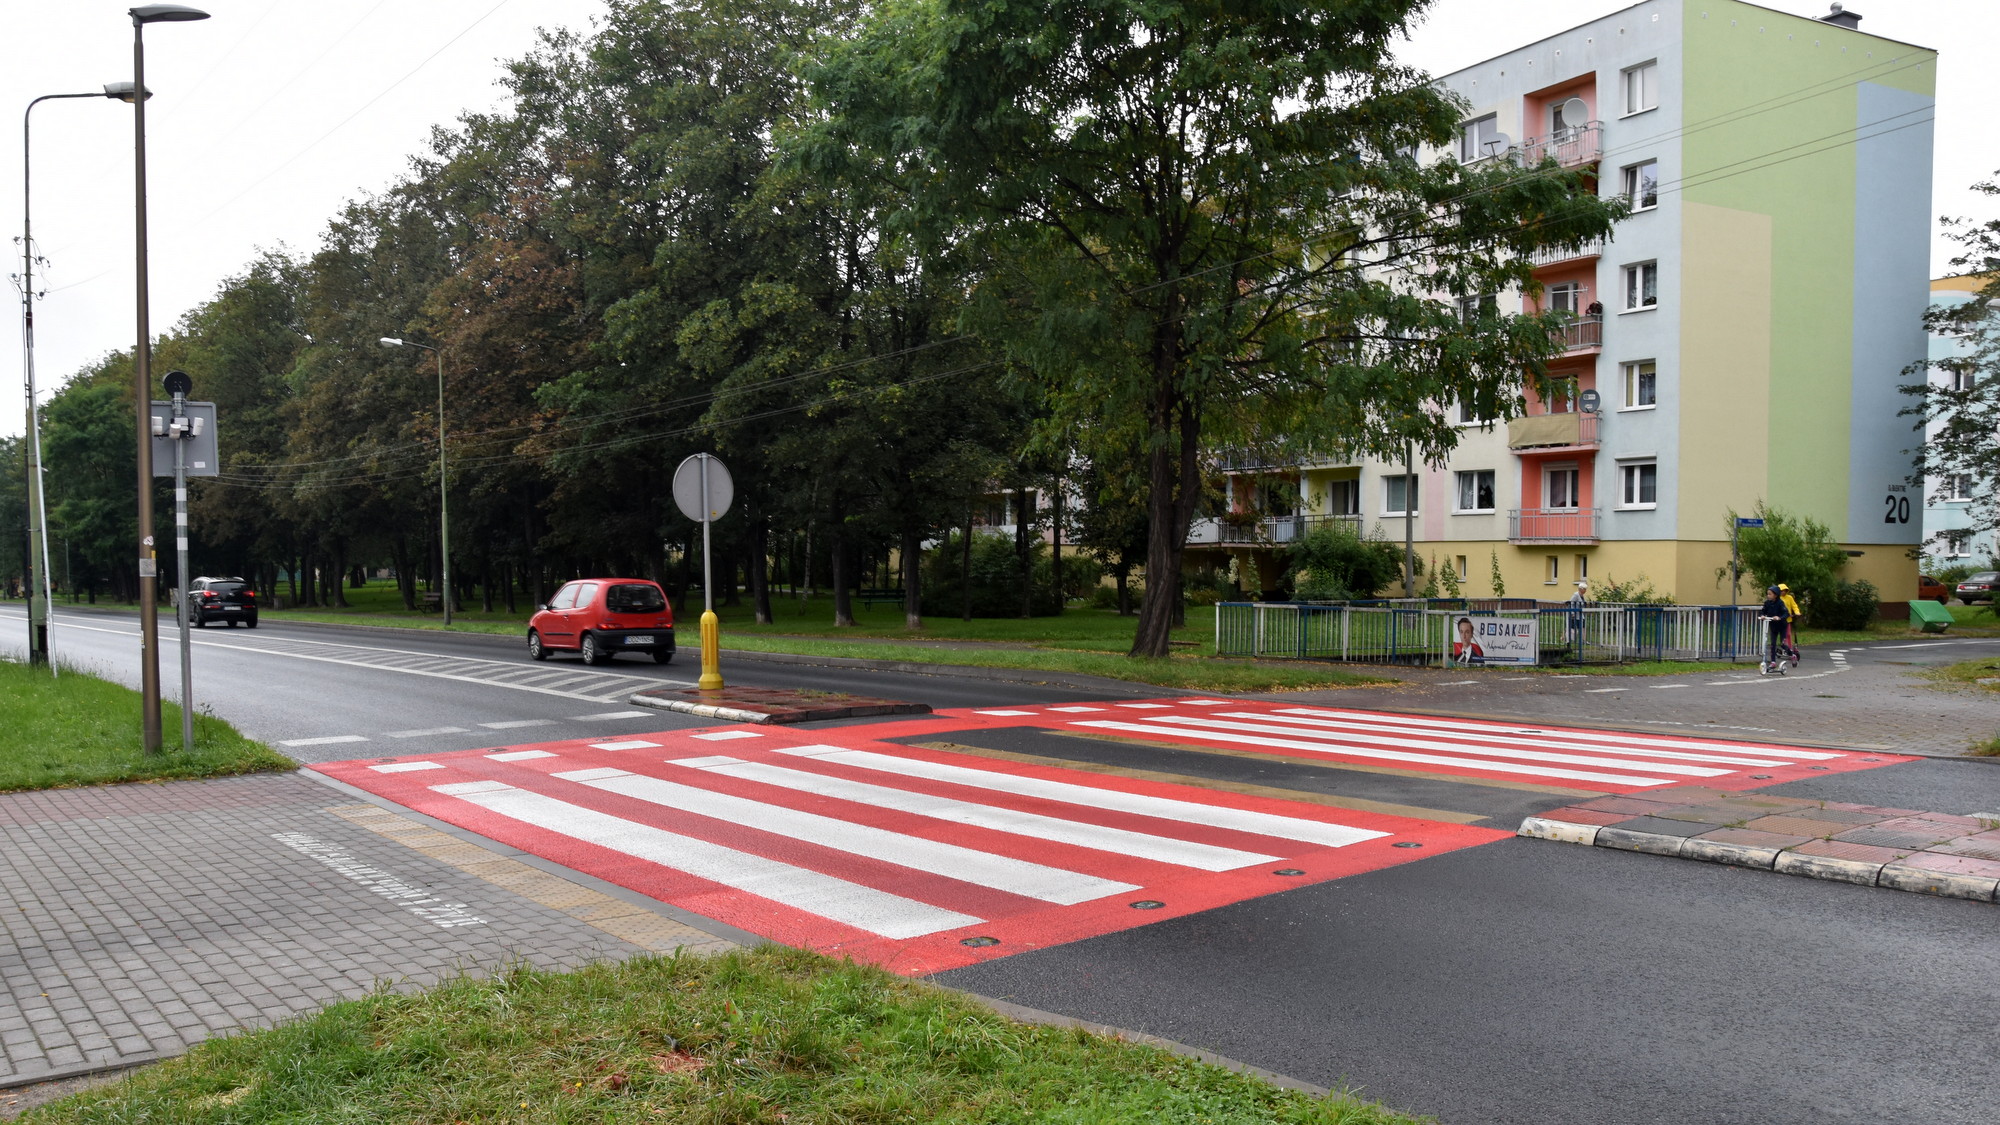 Aktywne przejście dla pieszych na ul. Piastwoskiej, przejście pokryte czerwoną nawierzchnią